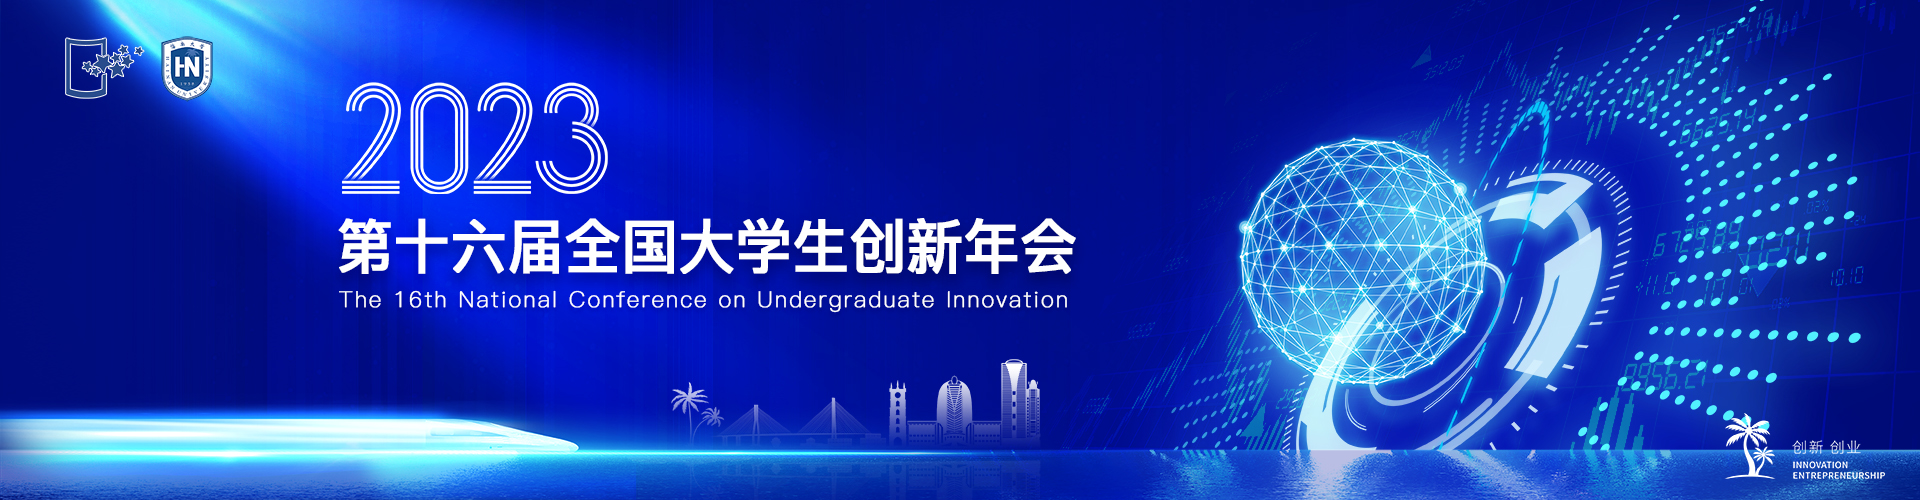 第十六届全国大学生创新创业年会